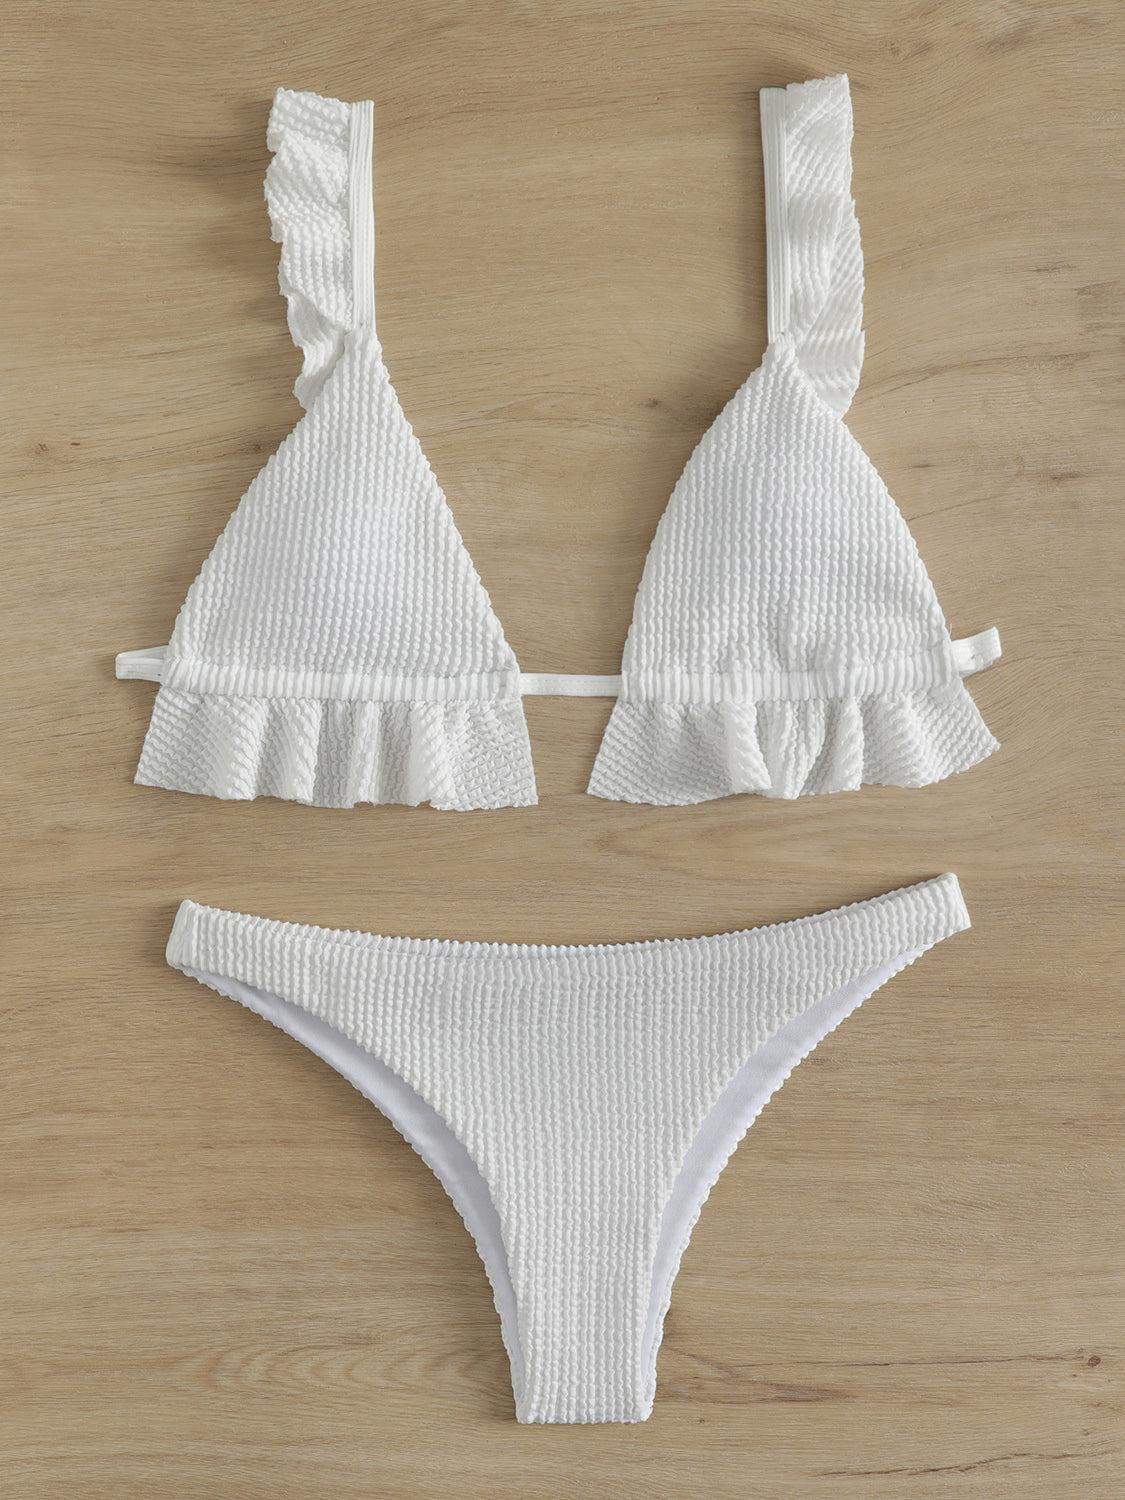 a white bikini top and bottom with ruffles